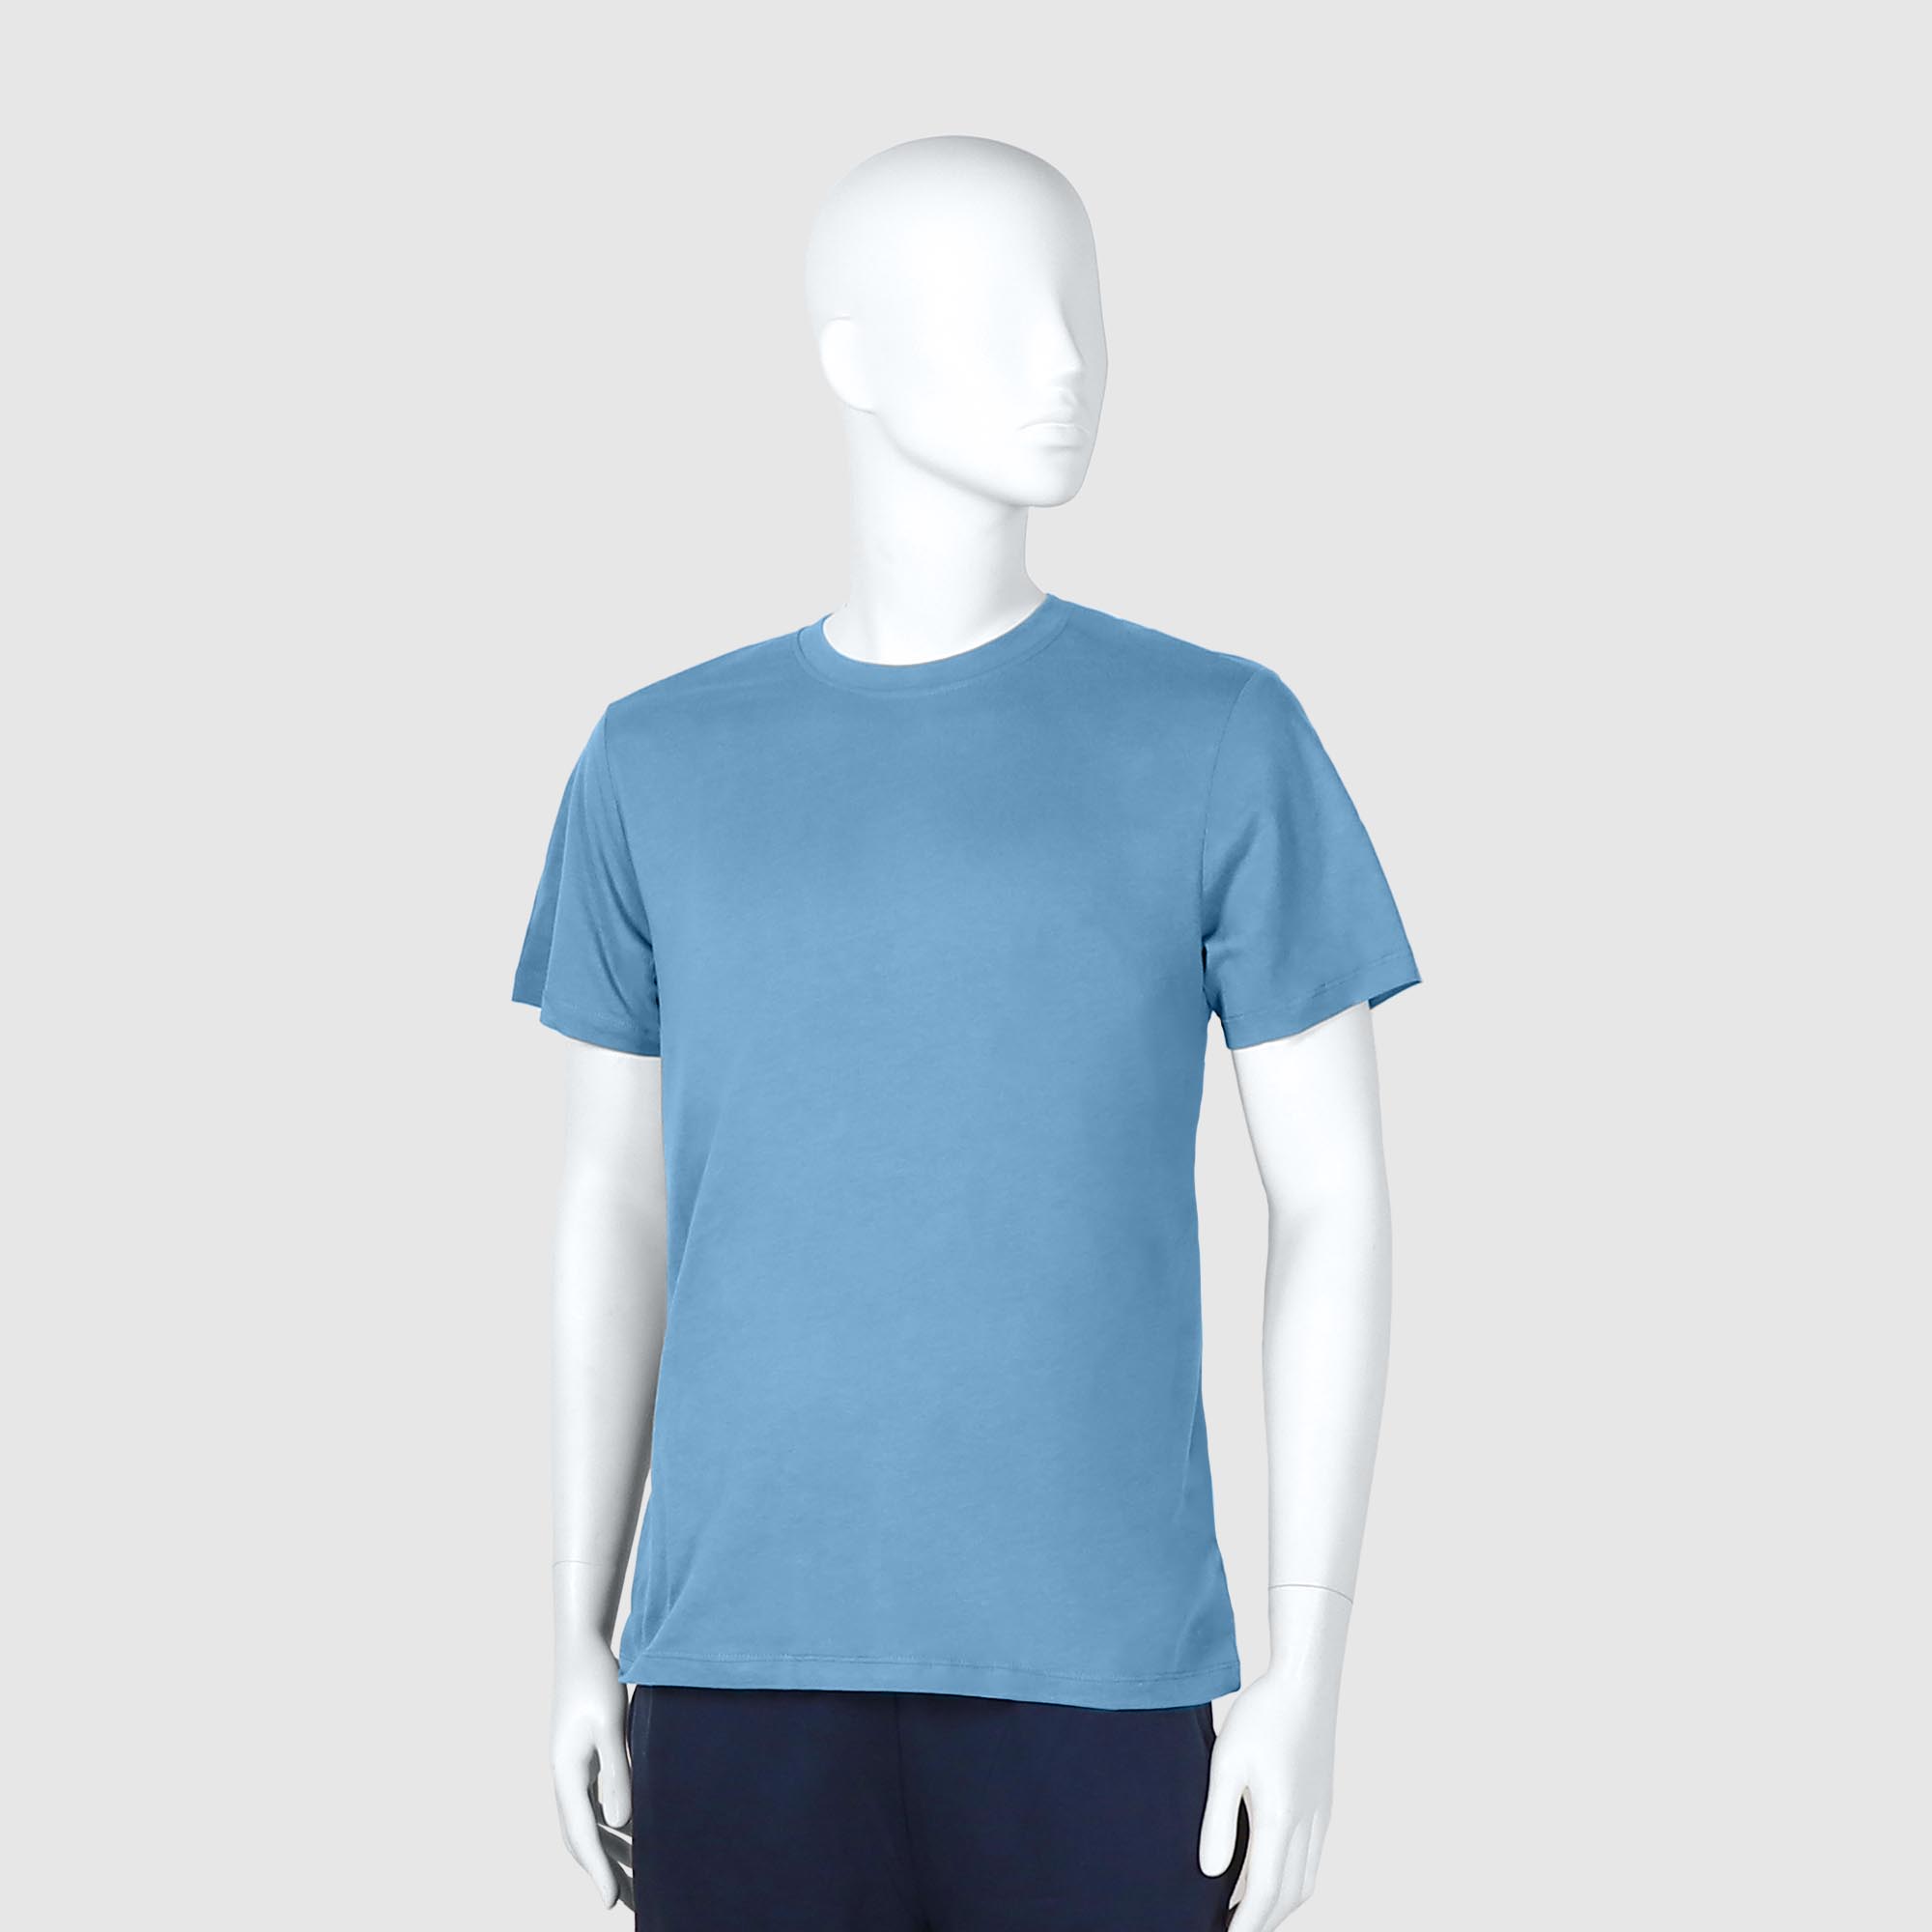 Мужская футболка Diva Teks голубая (DTD-03), цвет голубой, размер 46-48 - фото 1